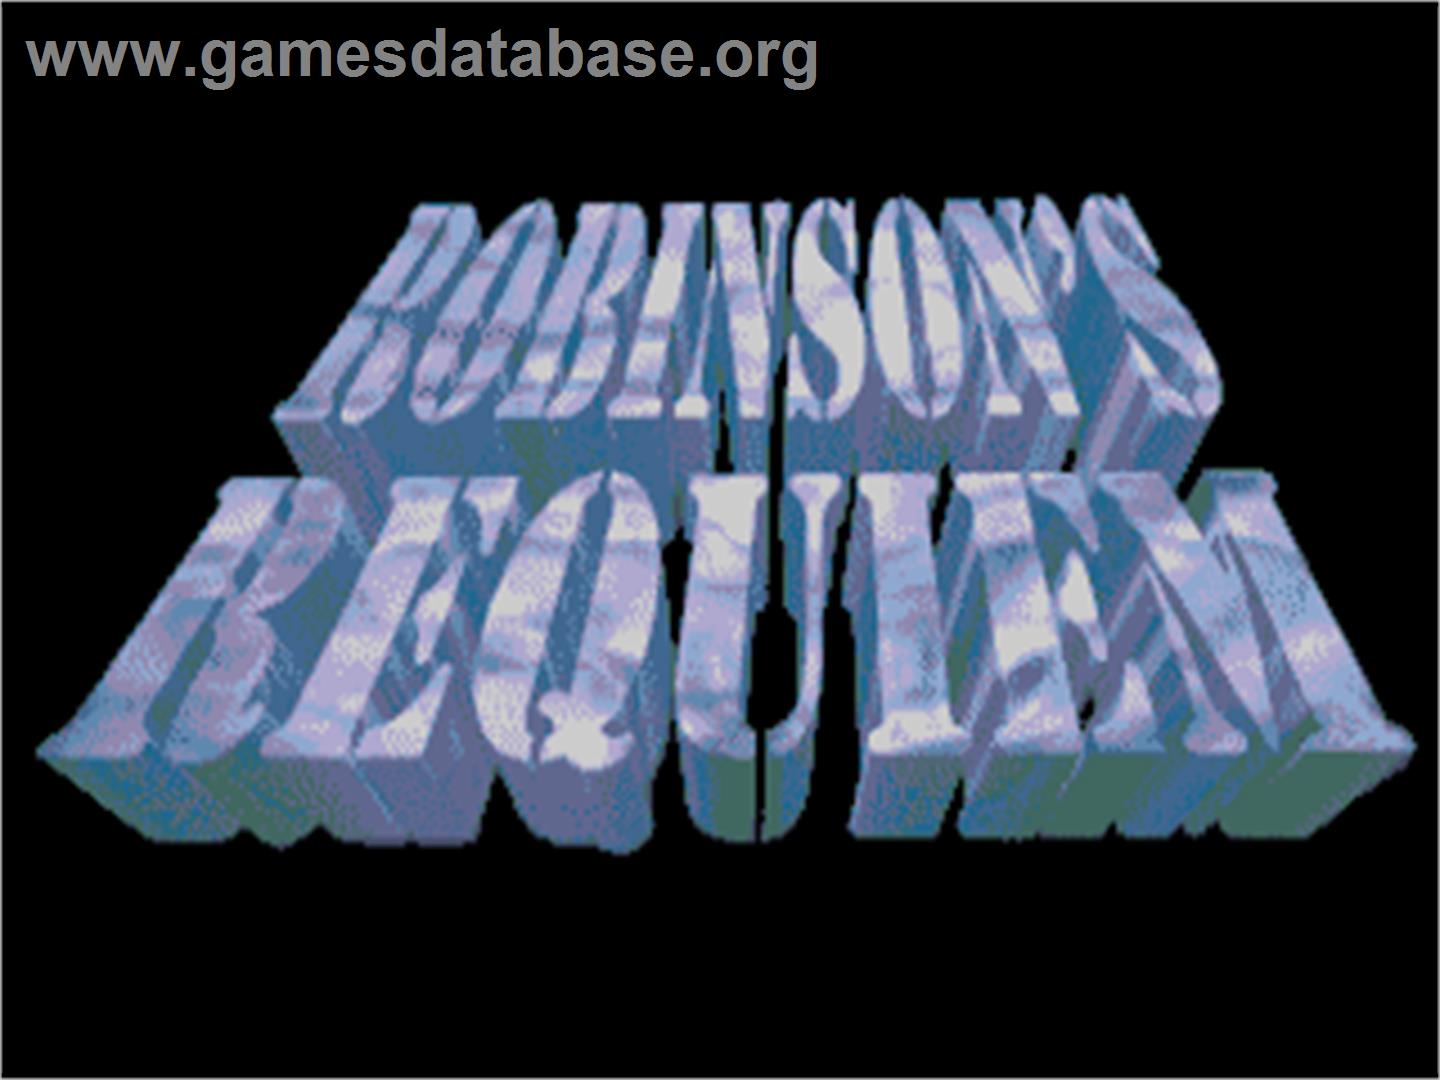 Robinson's Requiem - Commodore Amiga - Artwork - Title Screen